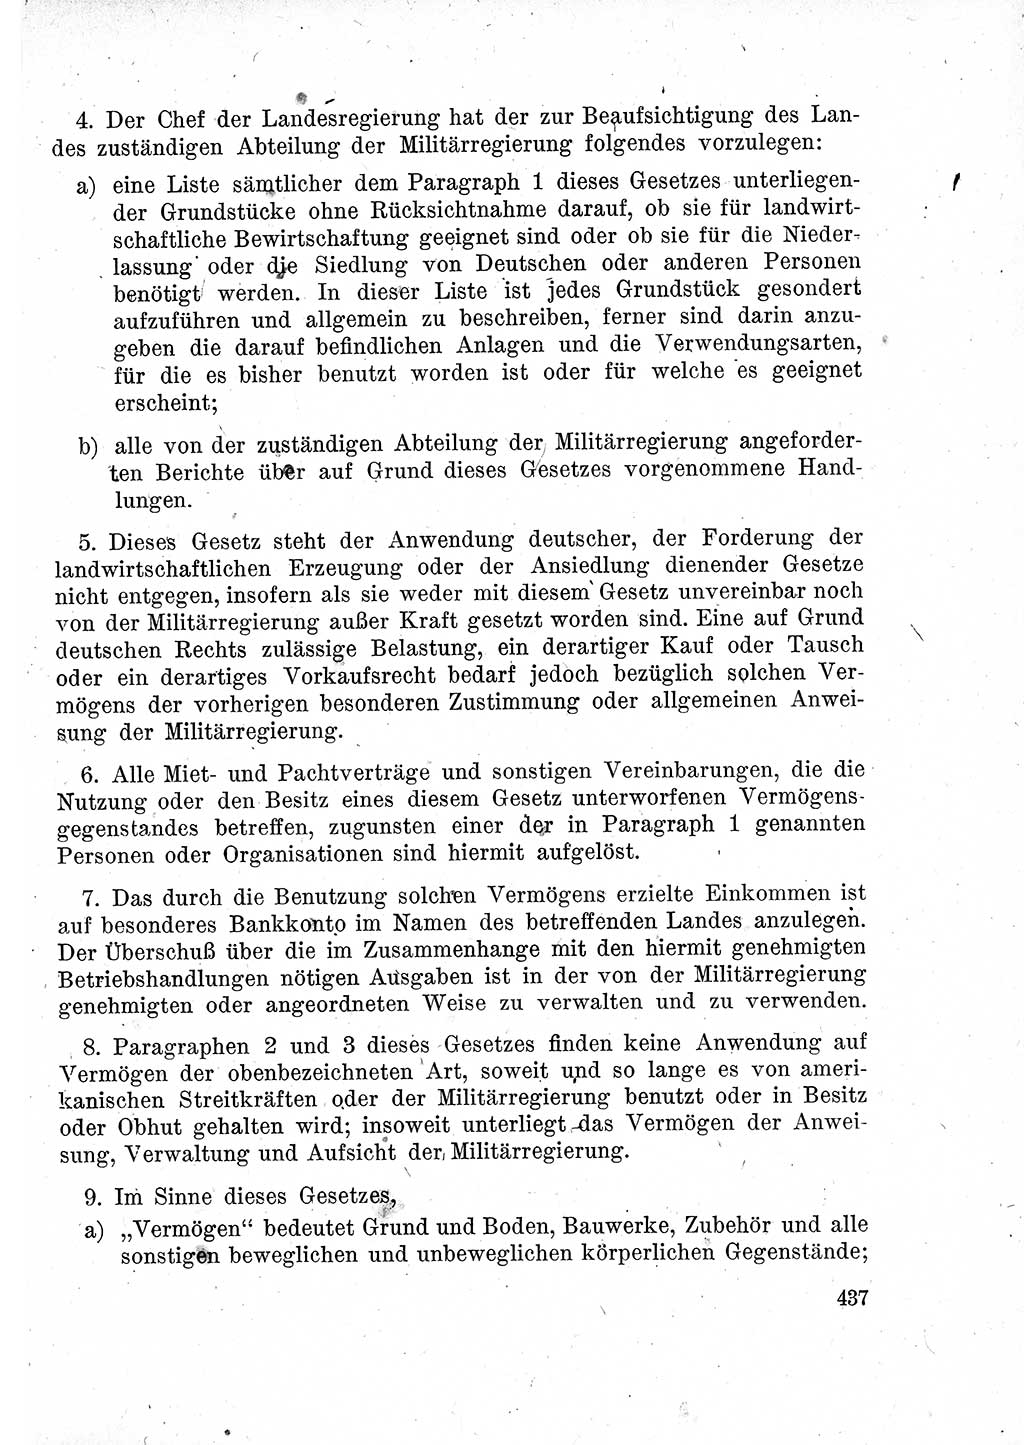 Das Recht der Besatzungsmacht (Deutschland), Proklamationen, Deklerationen, Verordnungen, Gesetze und Bekanntmachungen 1947, Seite 437 (R. Bes. Dtl. 1947, S. 437)